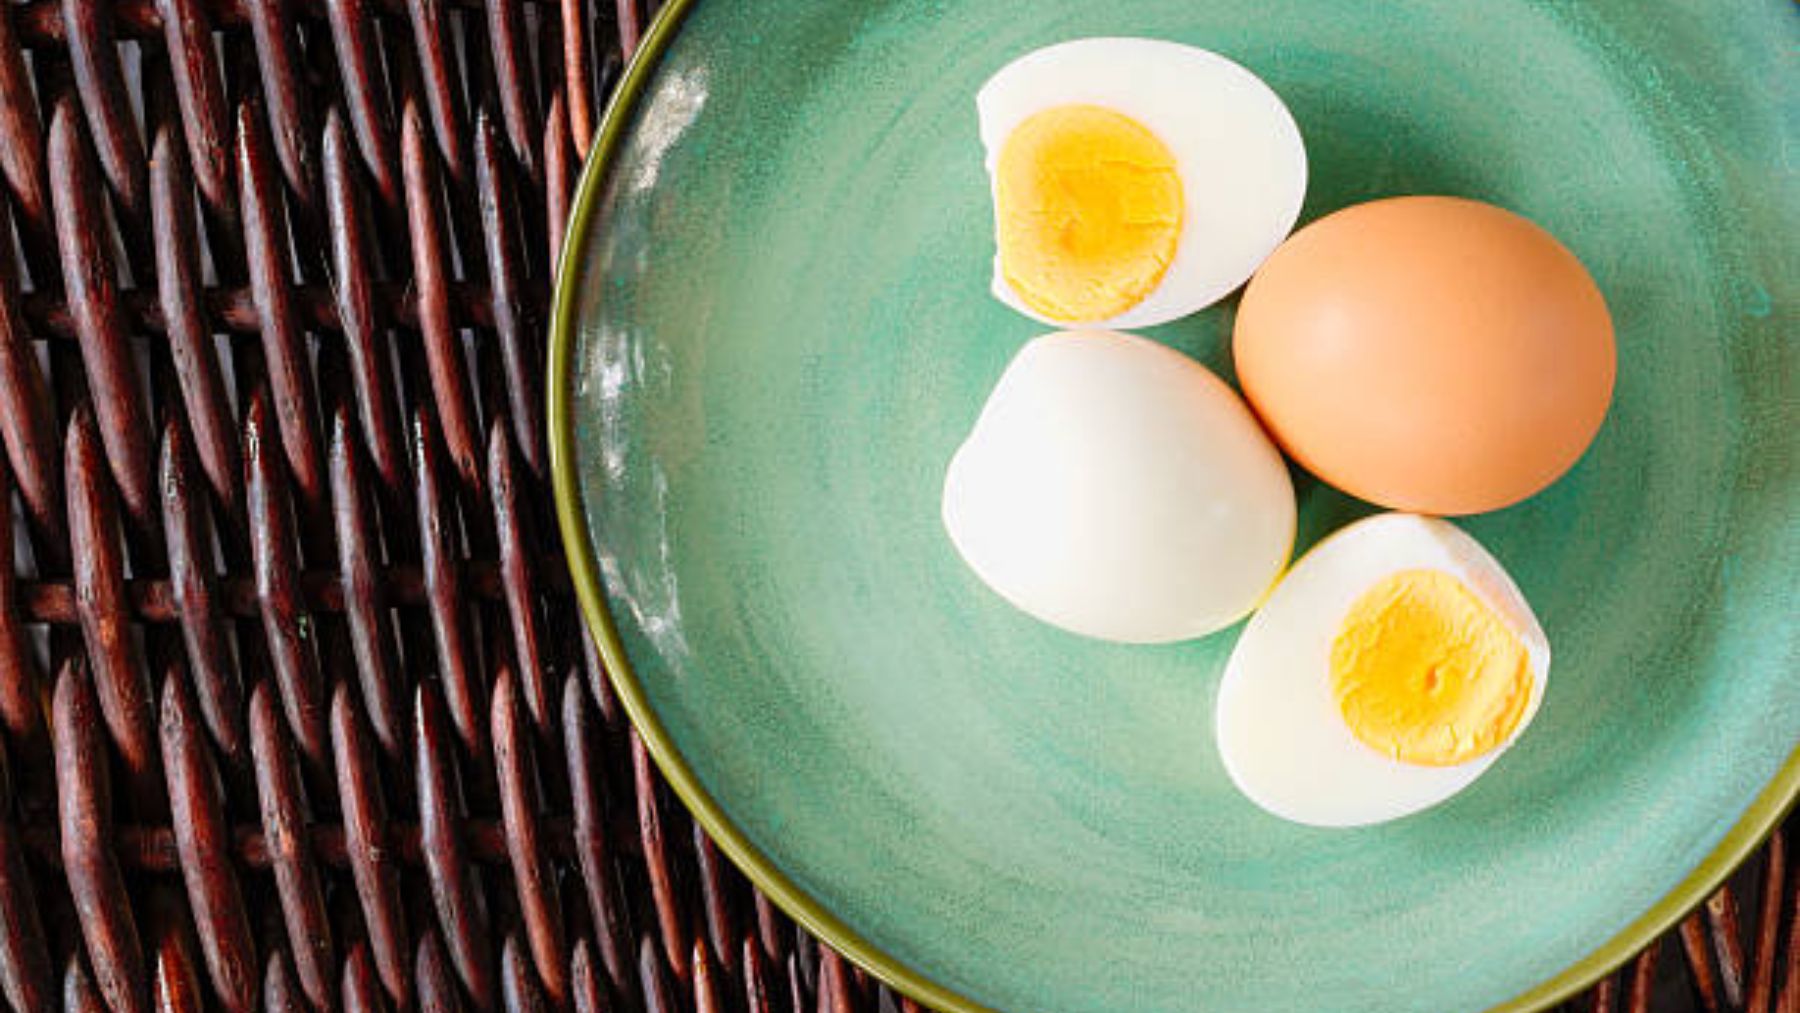 Descubre cómo hacer huevos cocidos sin necesidad de agua hirviendo